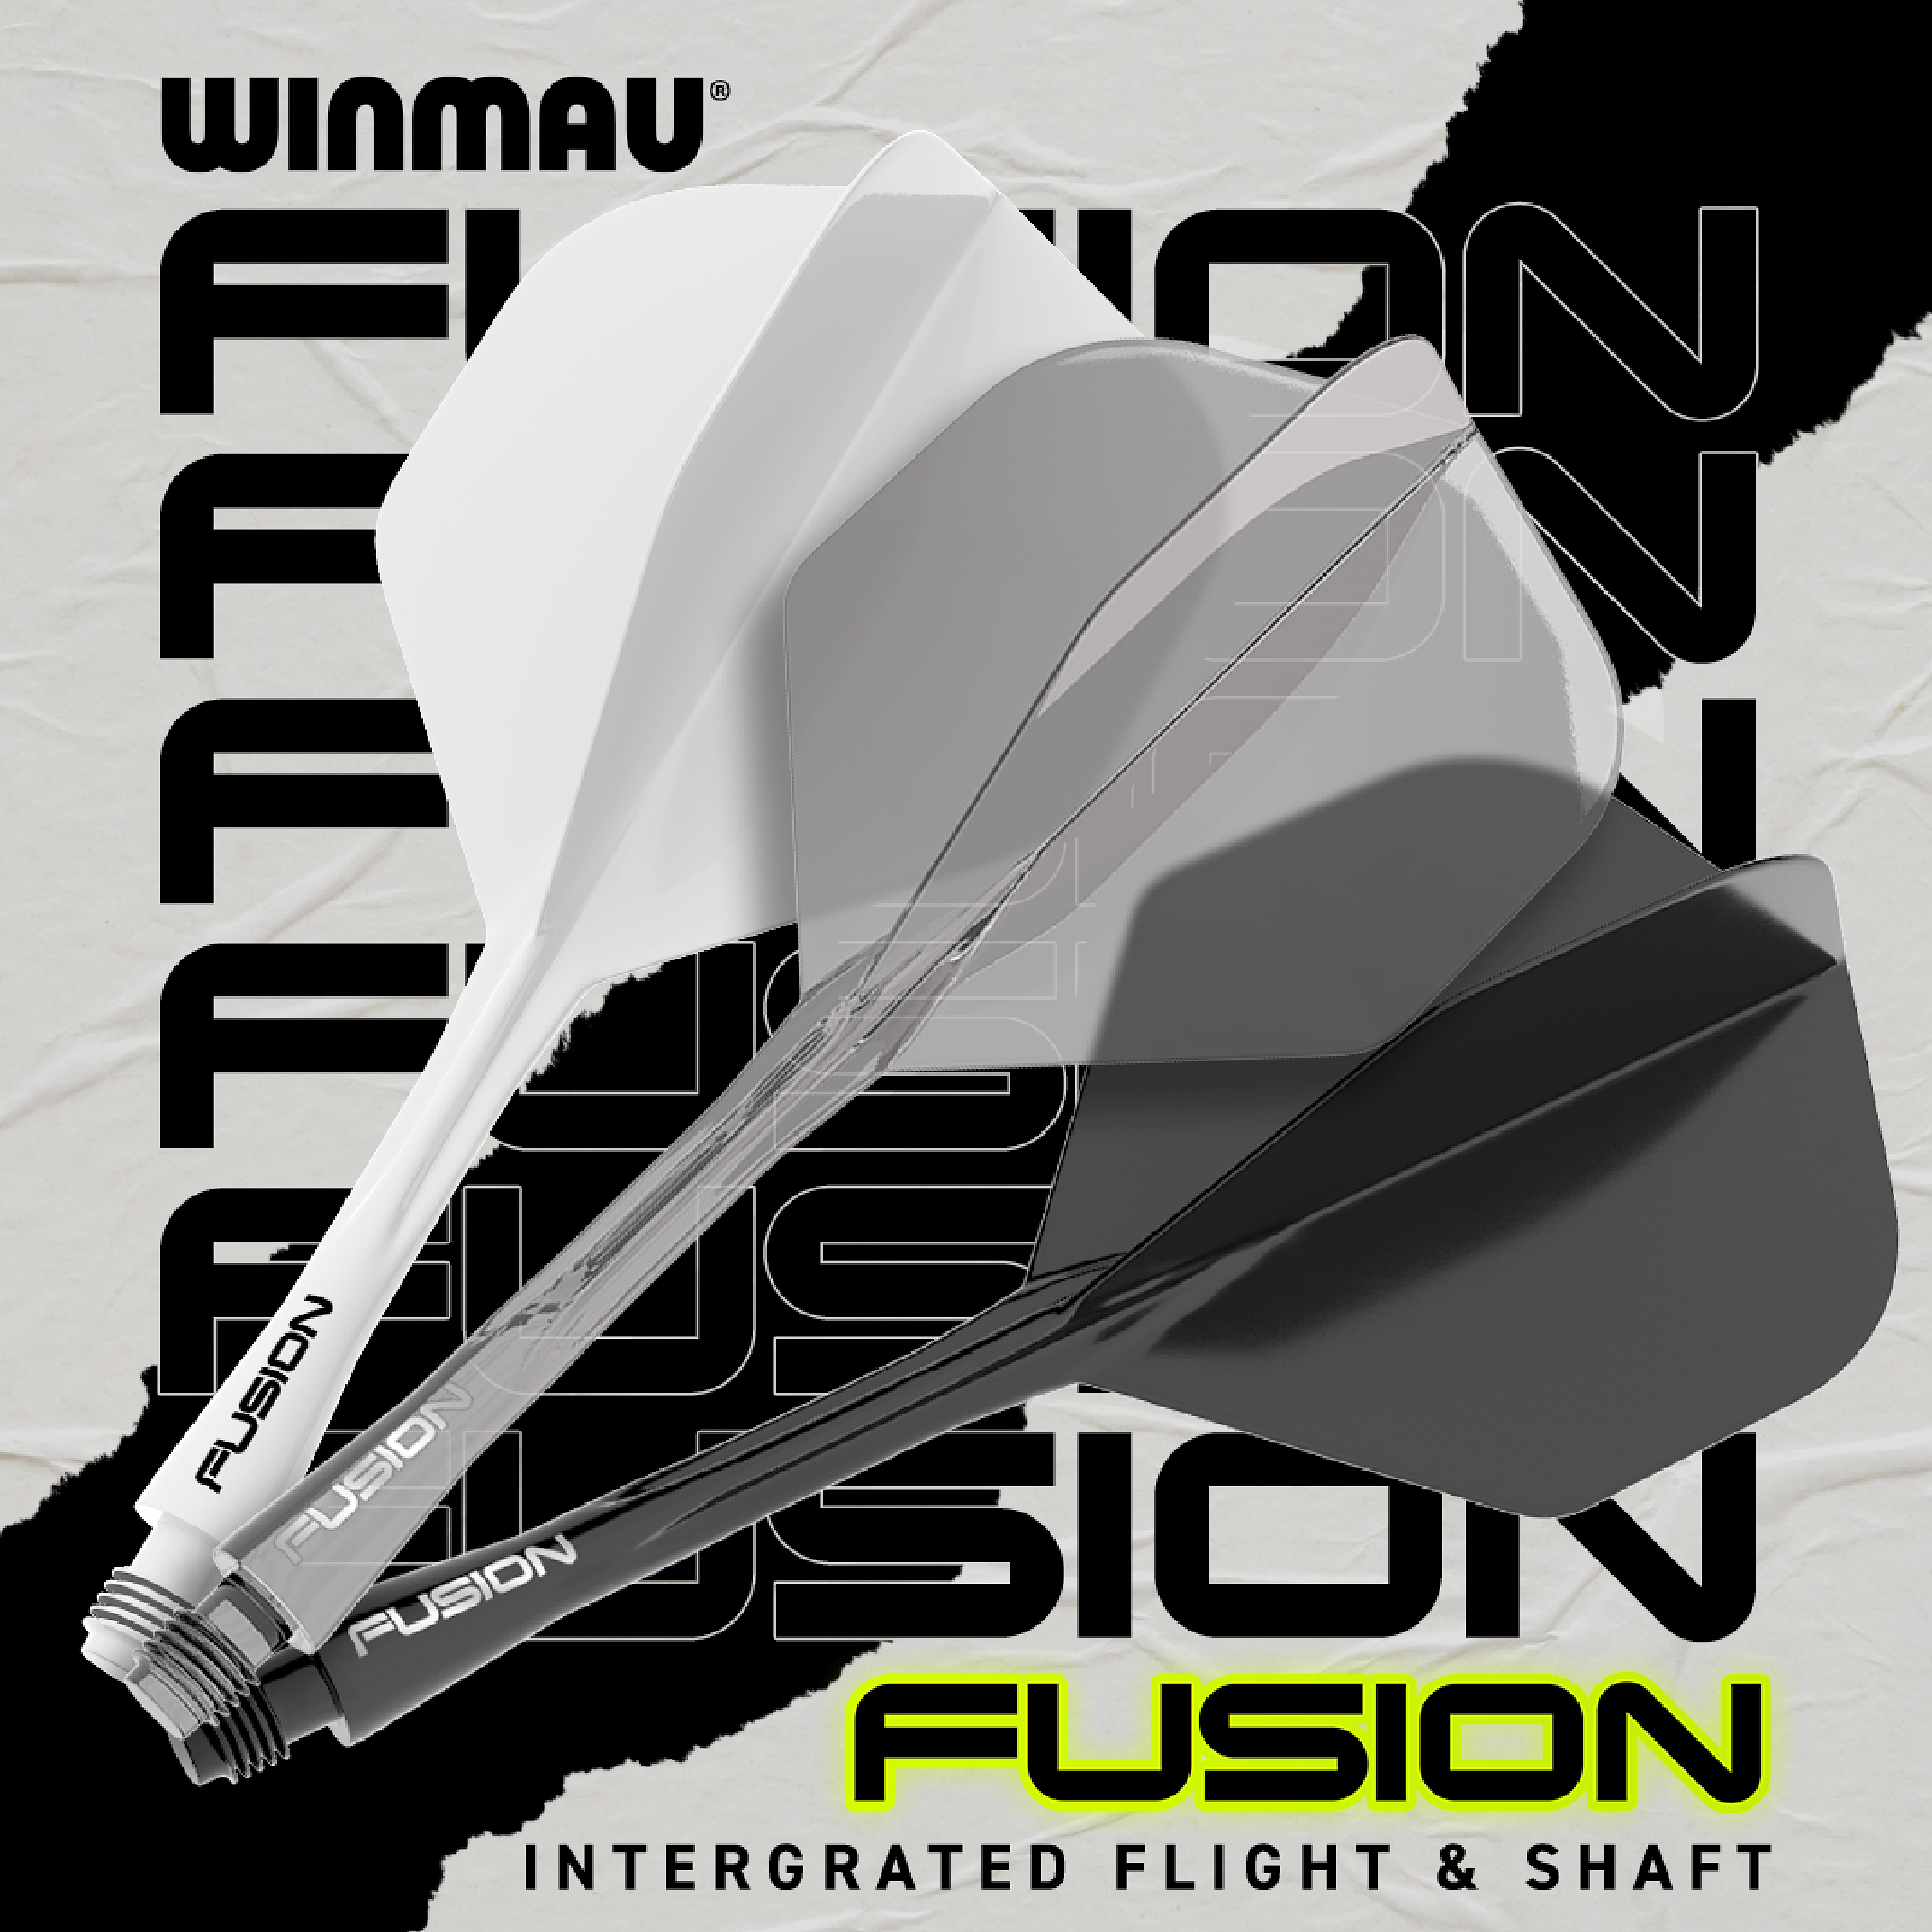 Winmau - Fusion Flightsystem - Grau